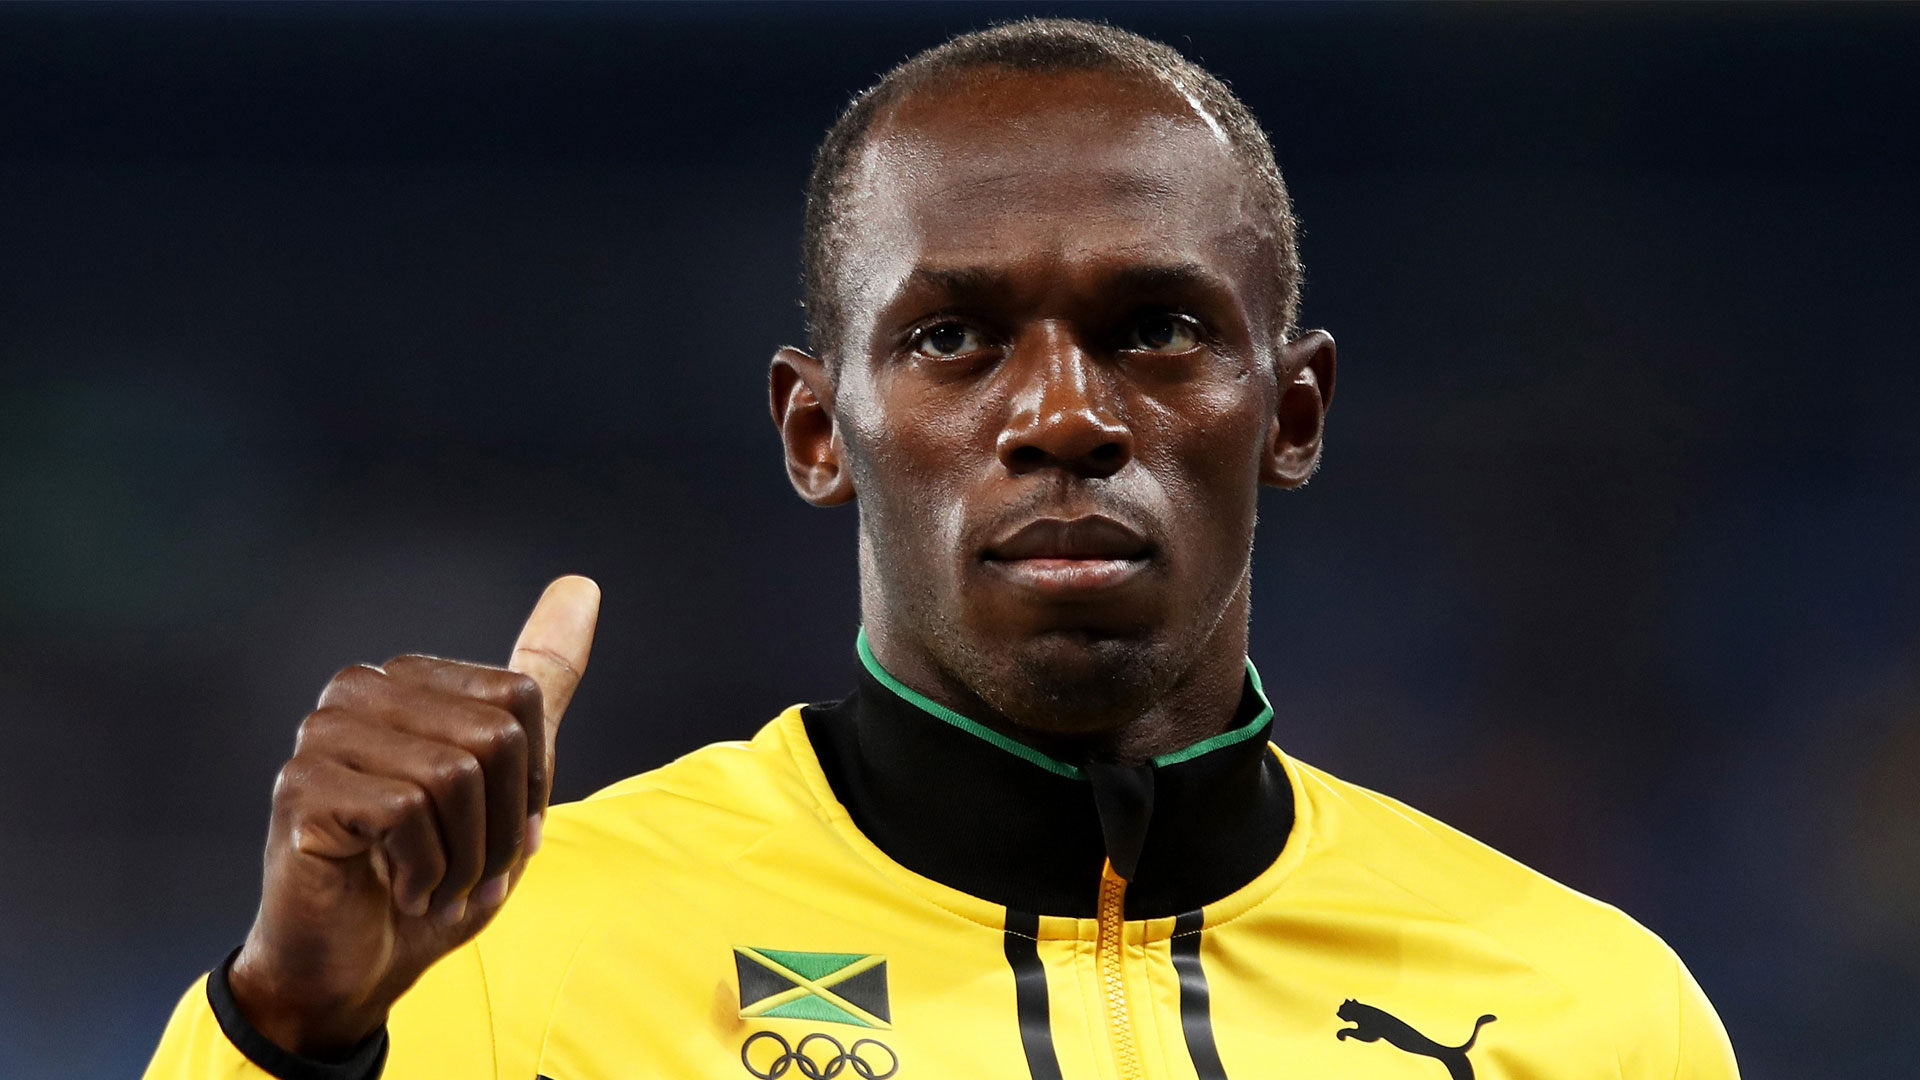 Biografía de Usain Bolt Campeonato Mundial 2009